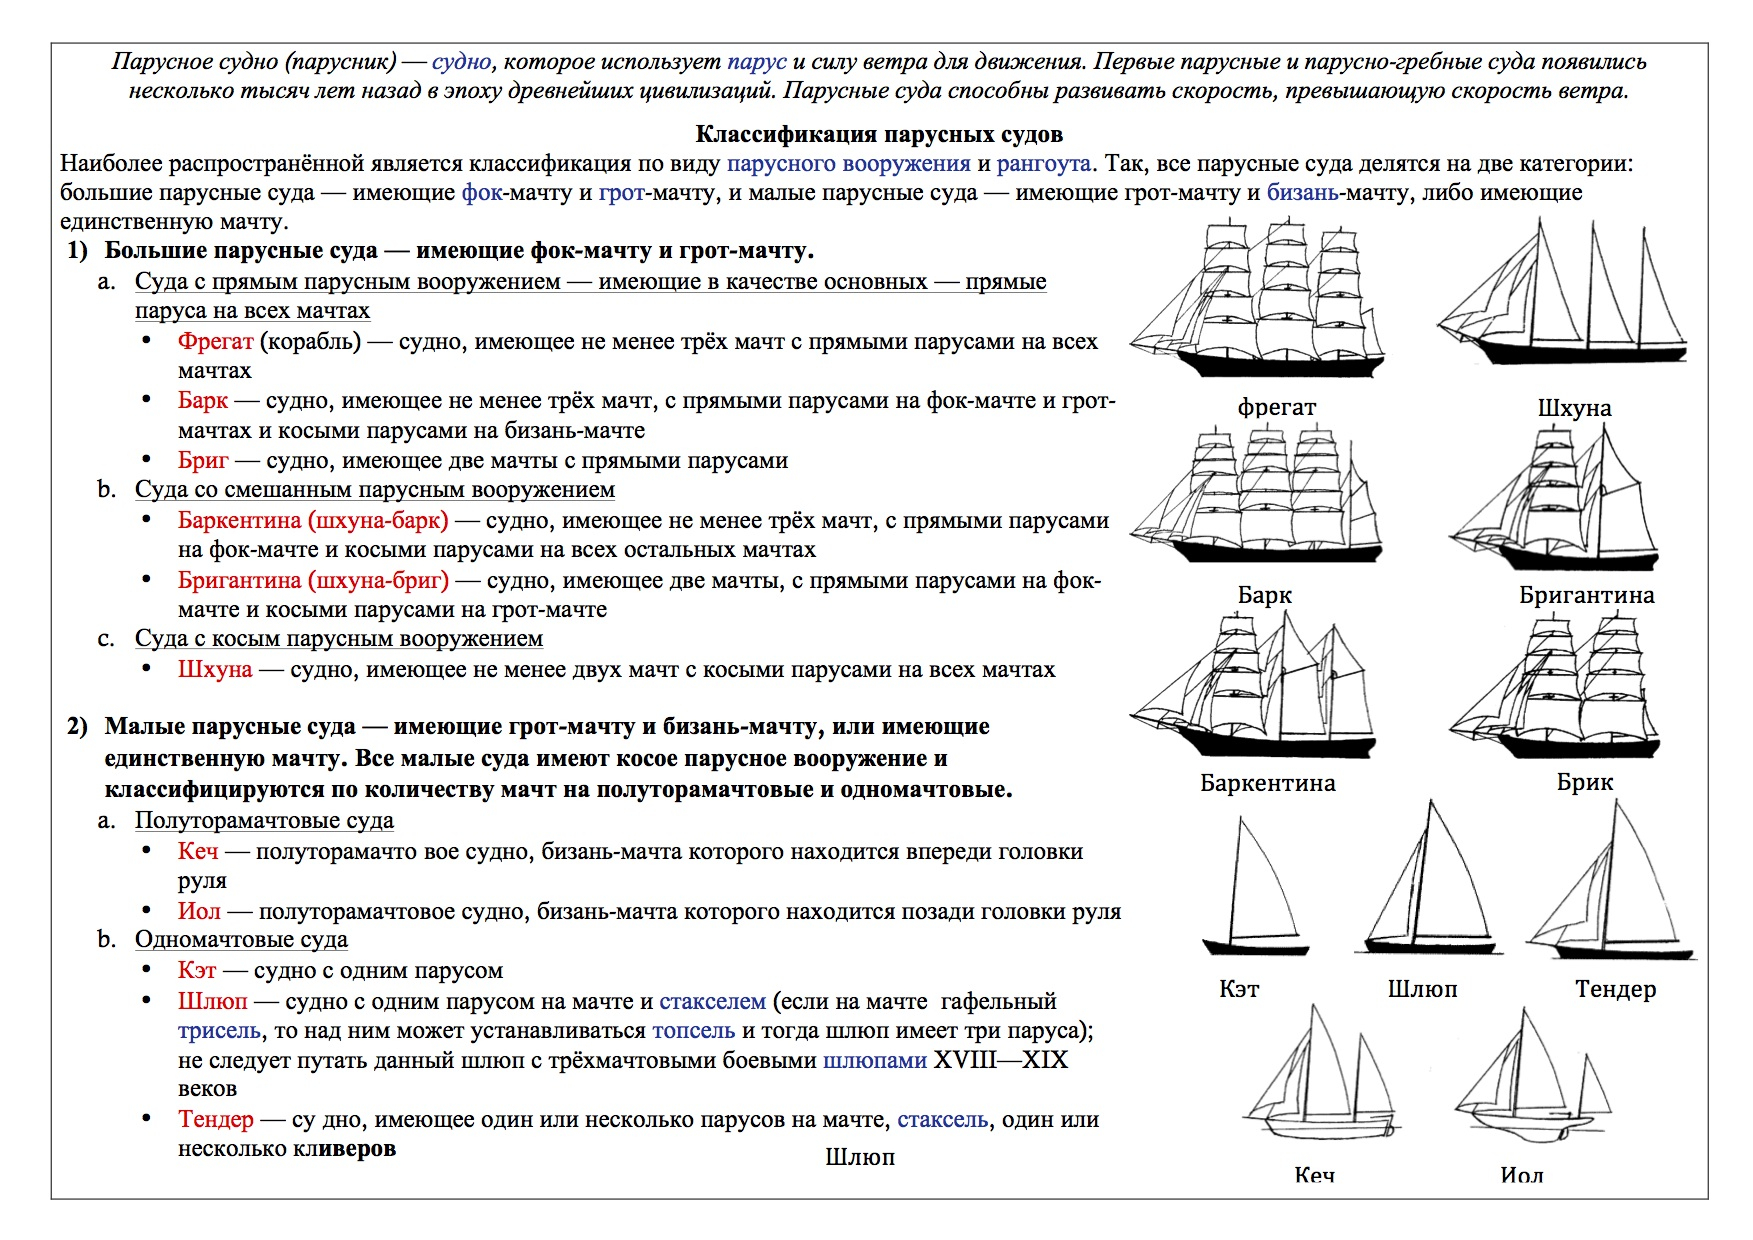 Тип парусного судна. Рангоут парусное вооружение. Классификация кораблей по размерам 18 века. Классификация кораблей парусного флота. Типы парусных судов и их классификация.